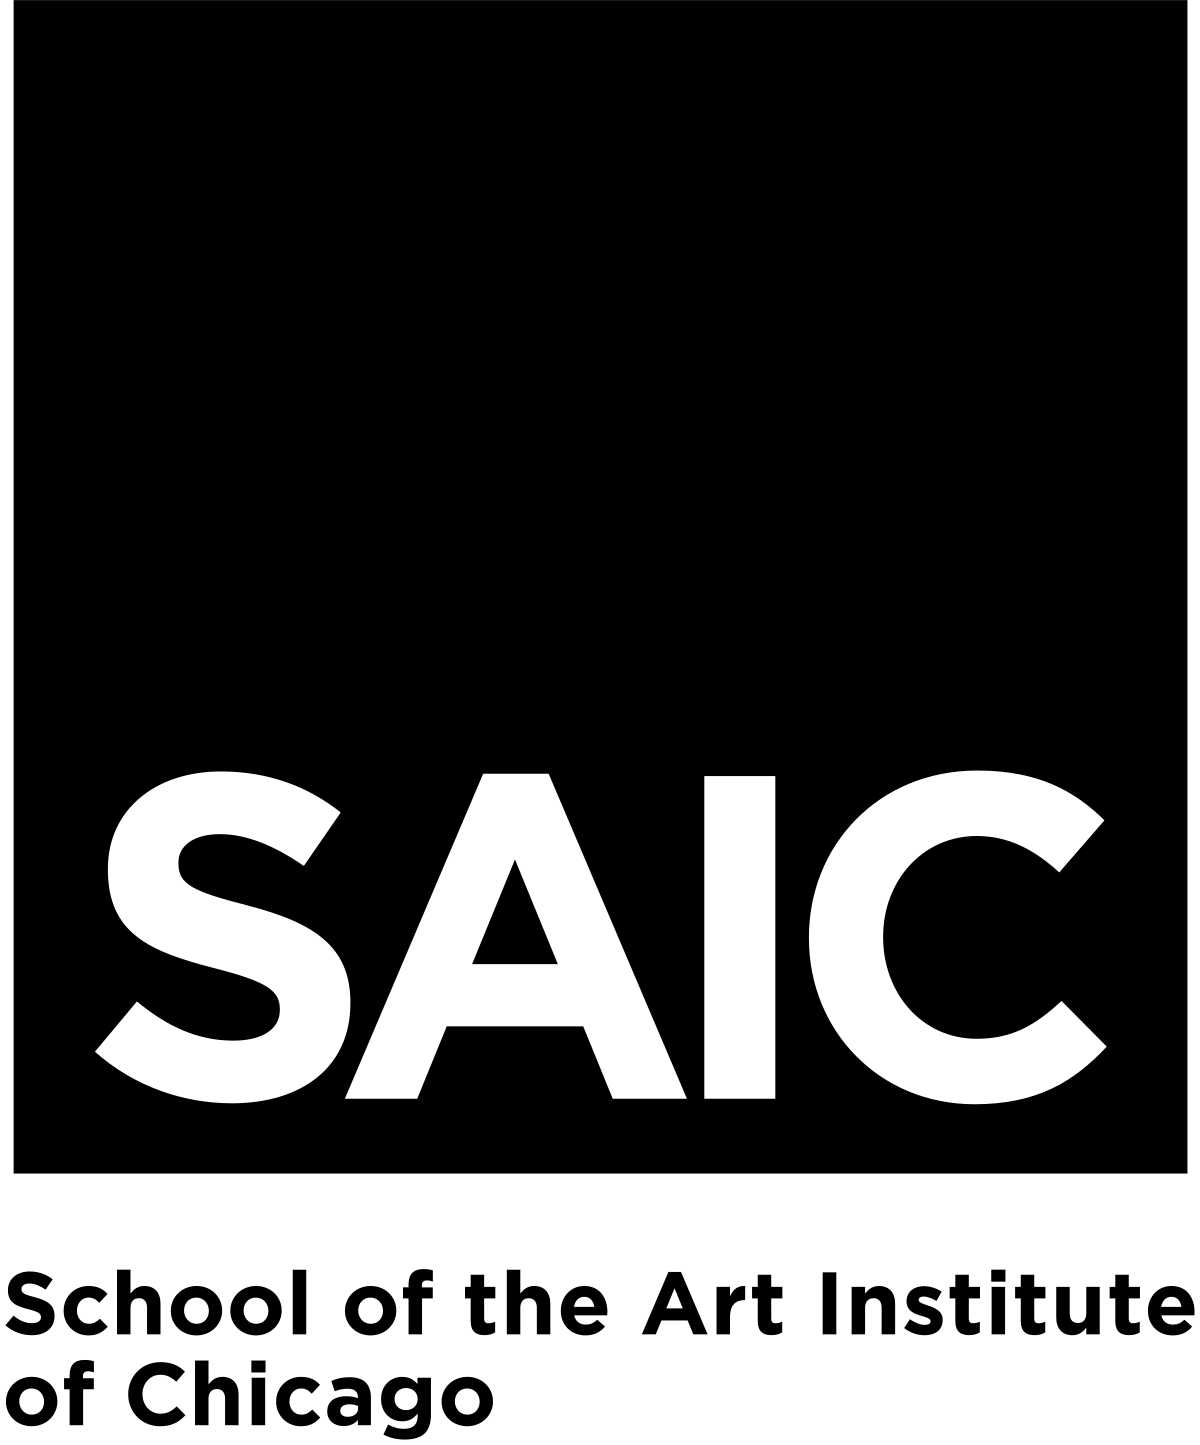 SAIC: School of the Art Institute of Chicago